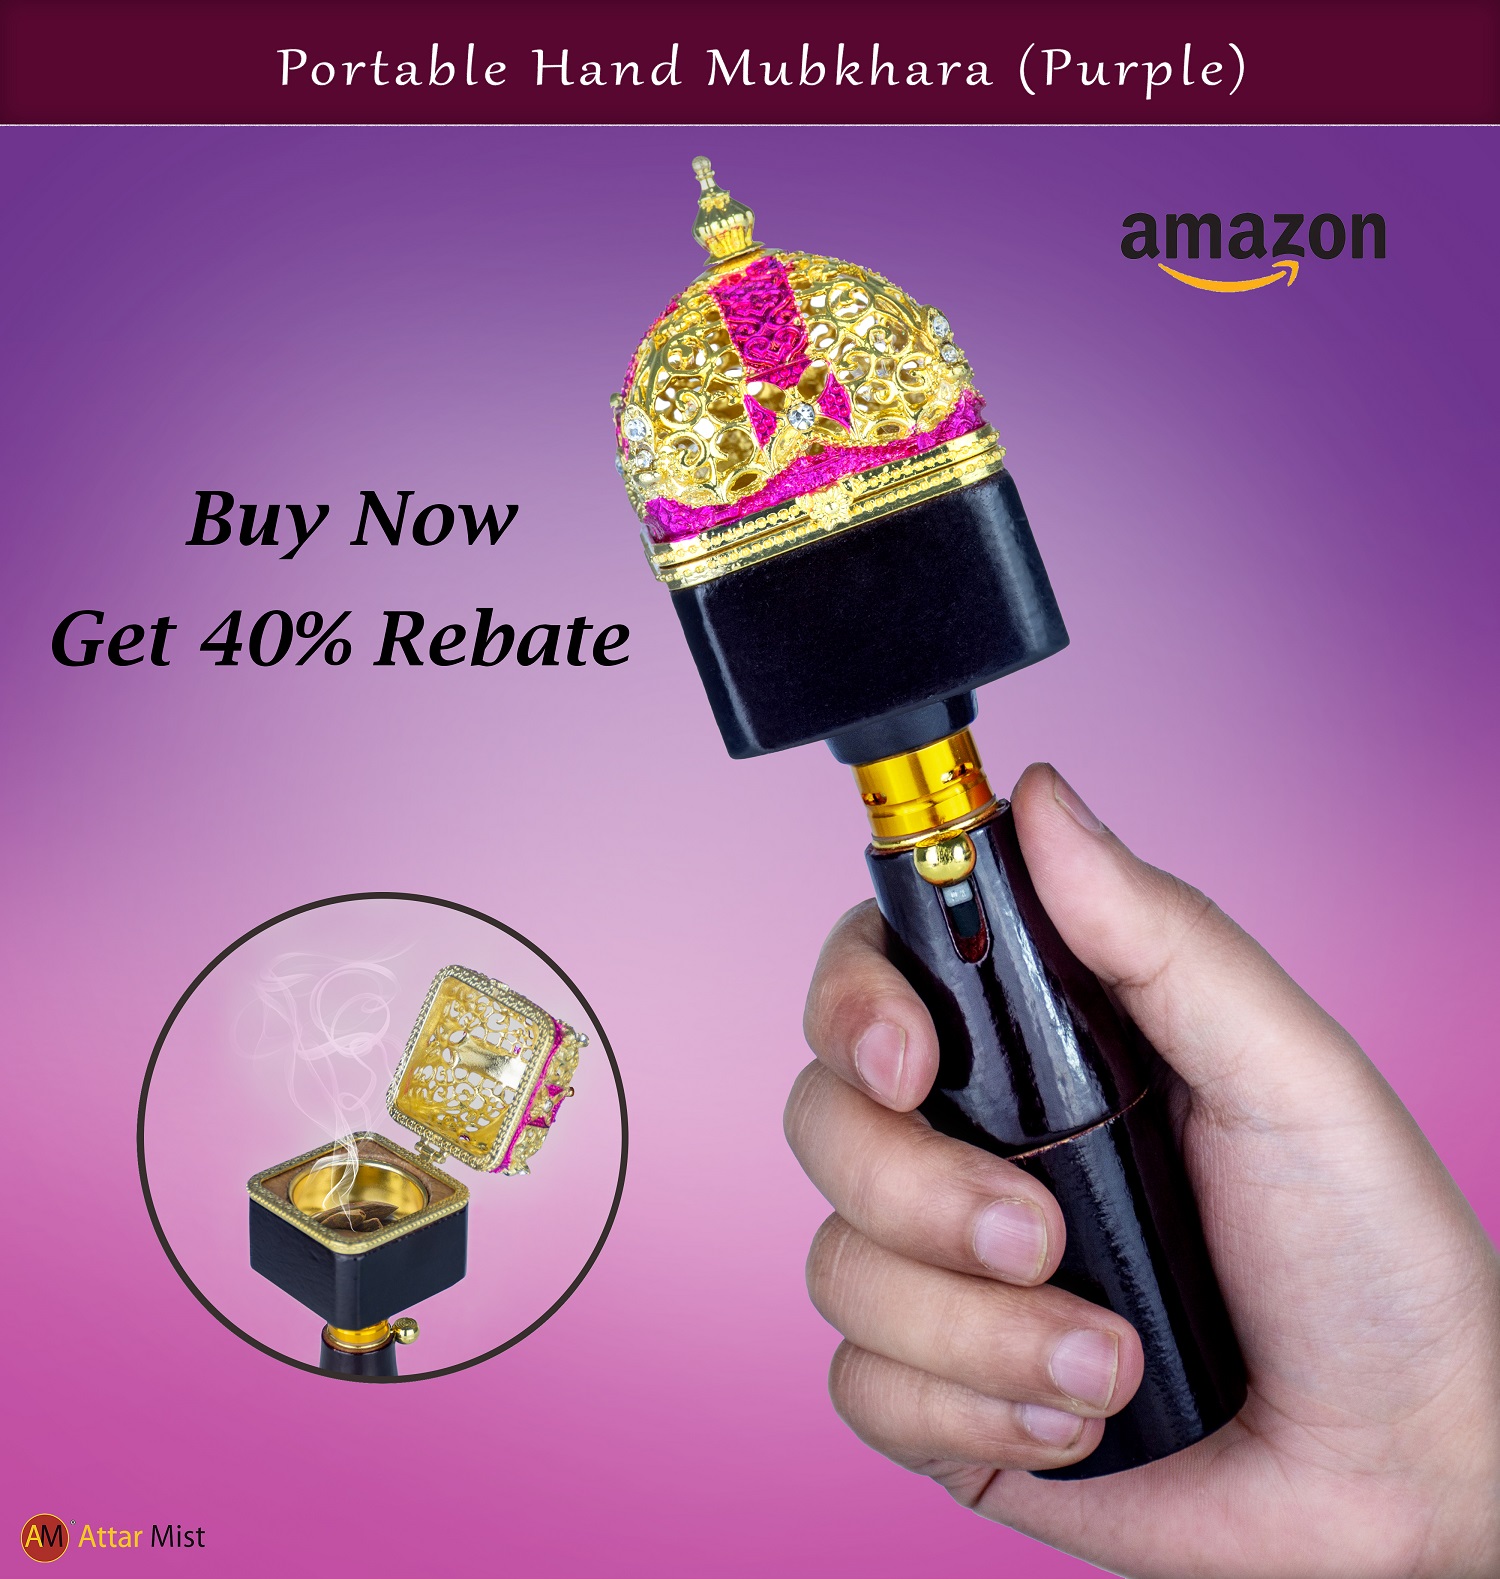 Get 40% Rebate on Purple Hand Held Burner on Amazon.com